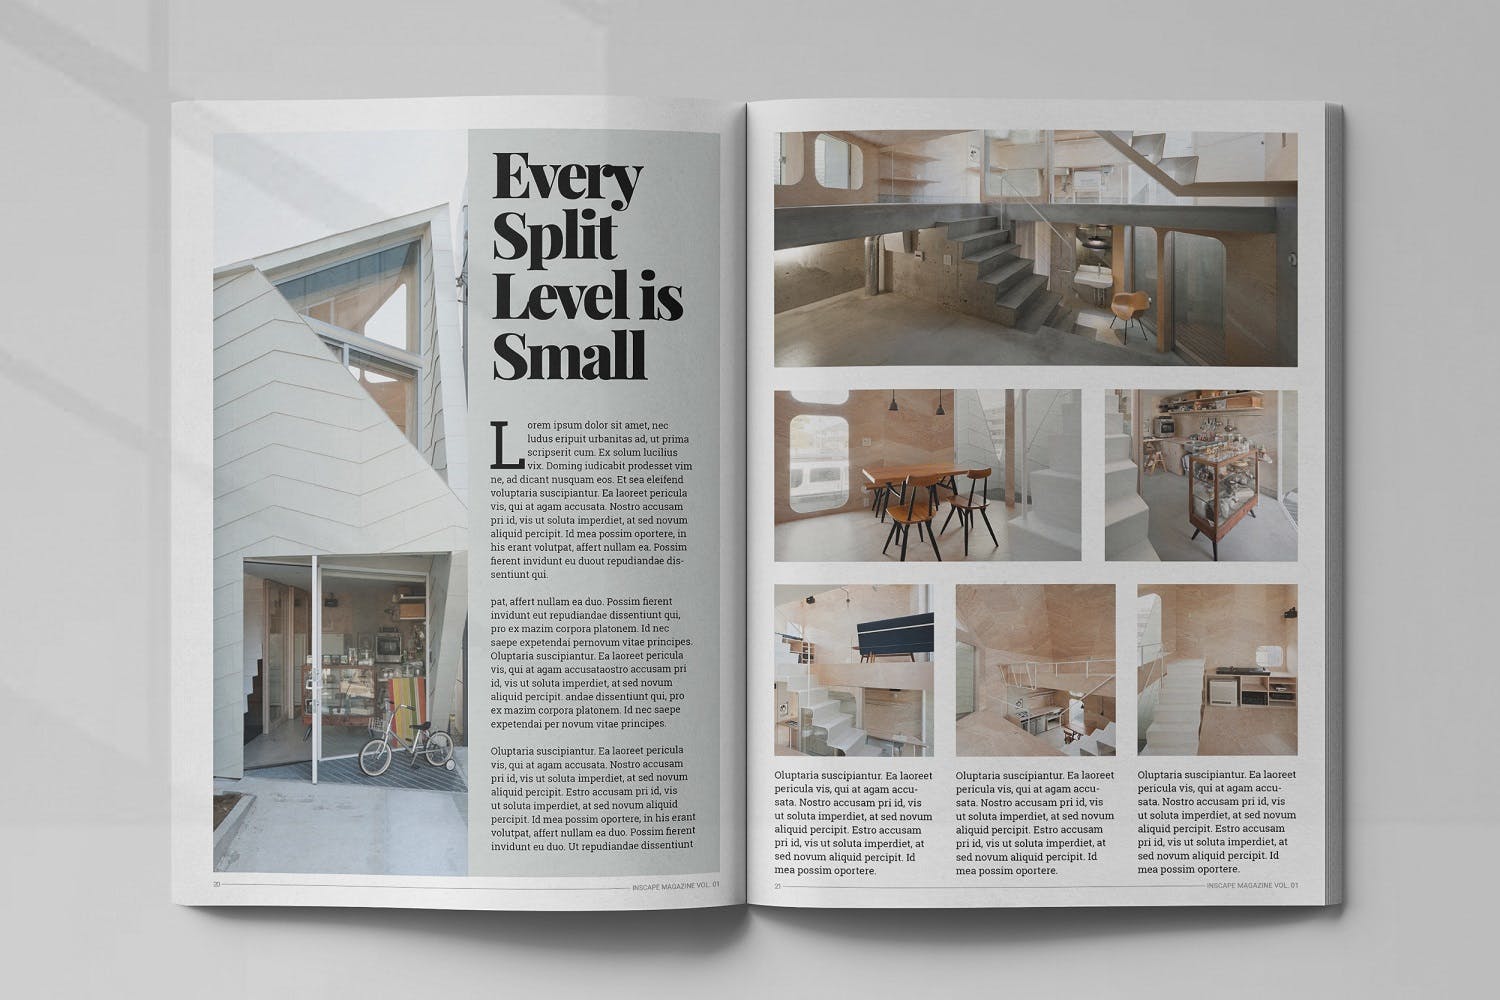 室内设计主题素材库精选杂志排版设计模板 Inscape Interior Magazine插图(10)